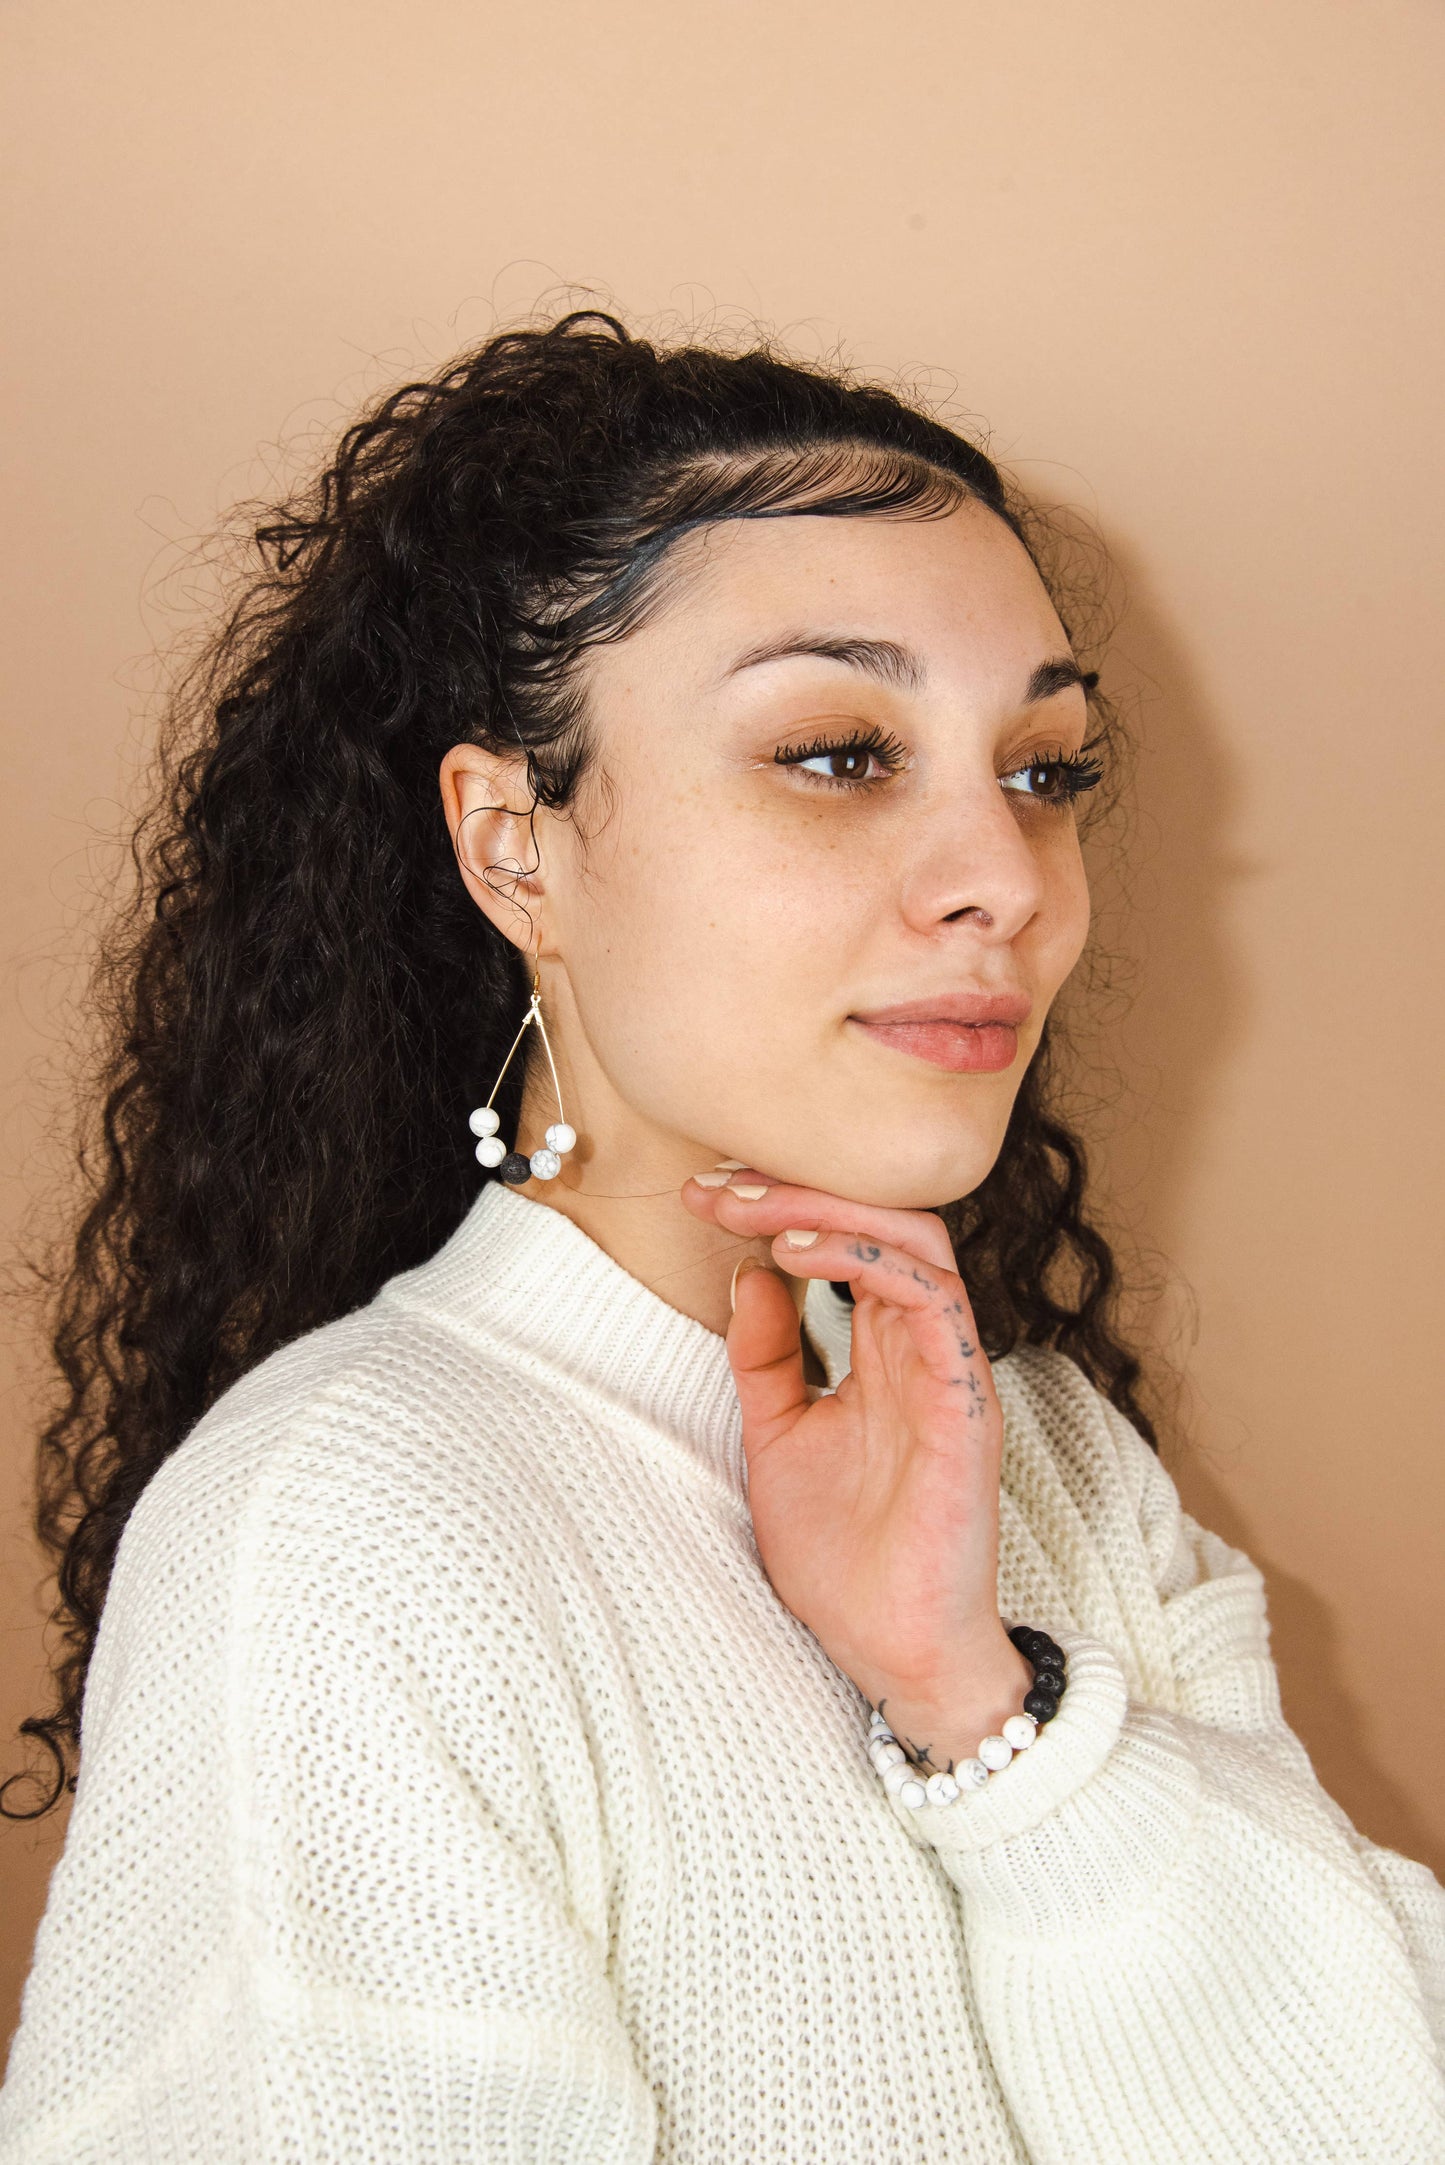 Dalmatian Jade & Lava Rock - Teardrop Diffuser Earrings